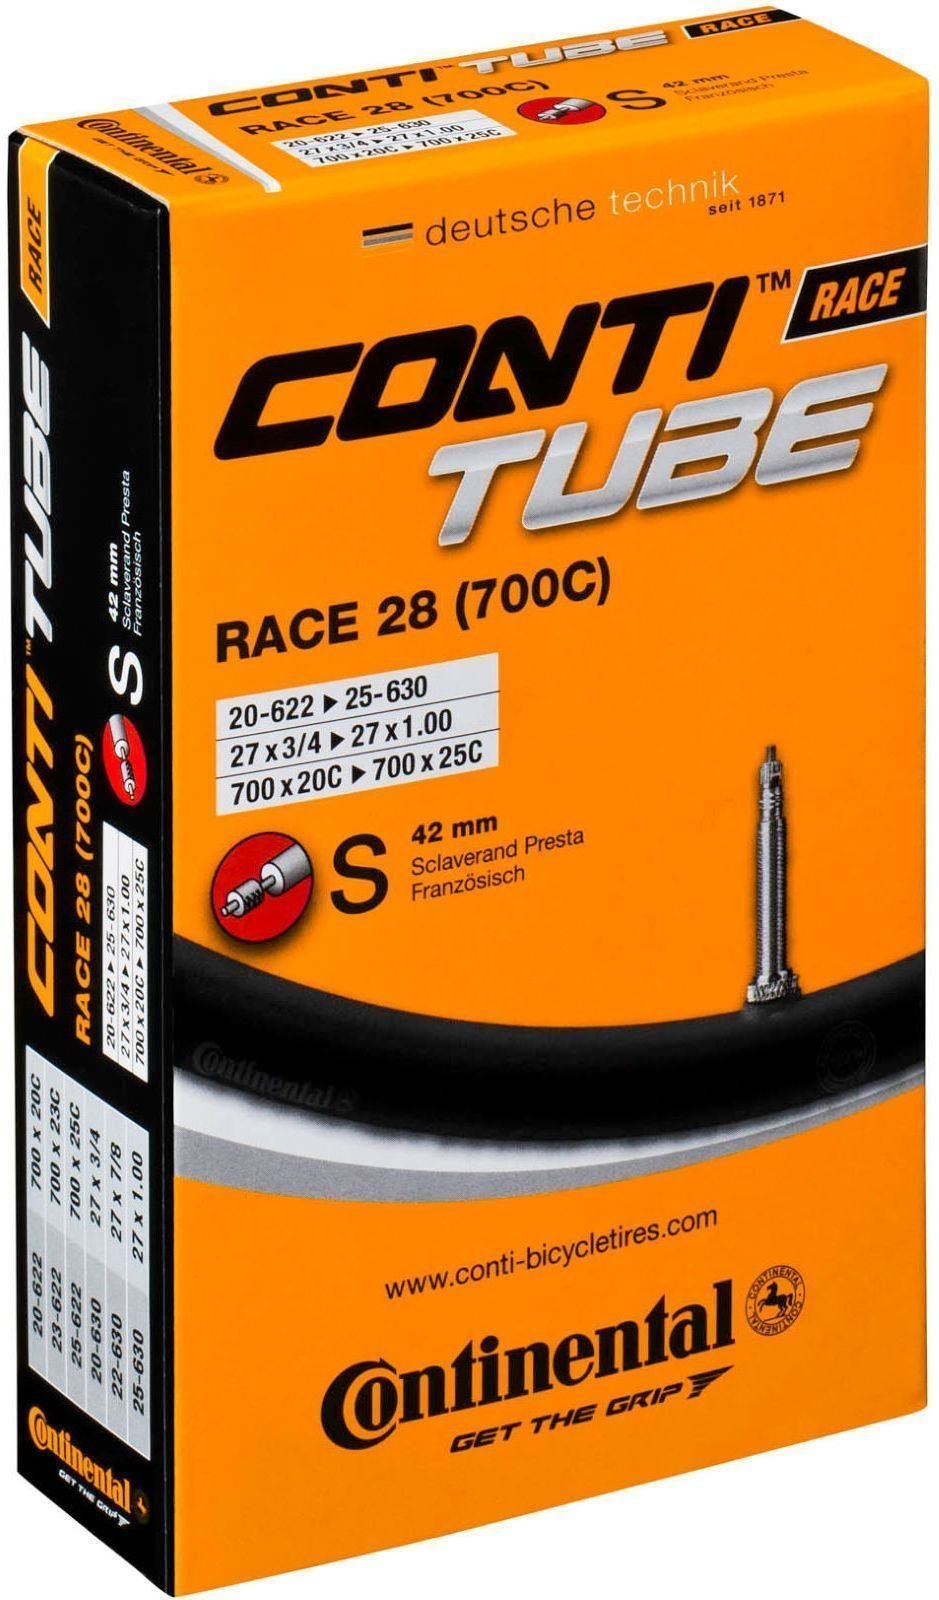 Zračnico Continental Race 20 - 25 mm 42.0 Presta Bike Tube